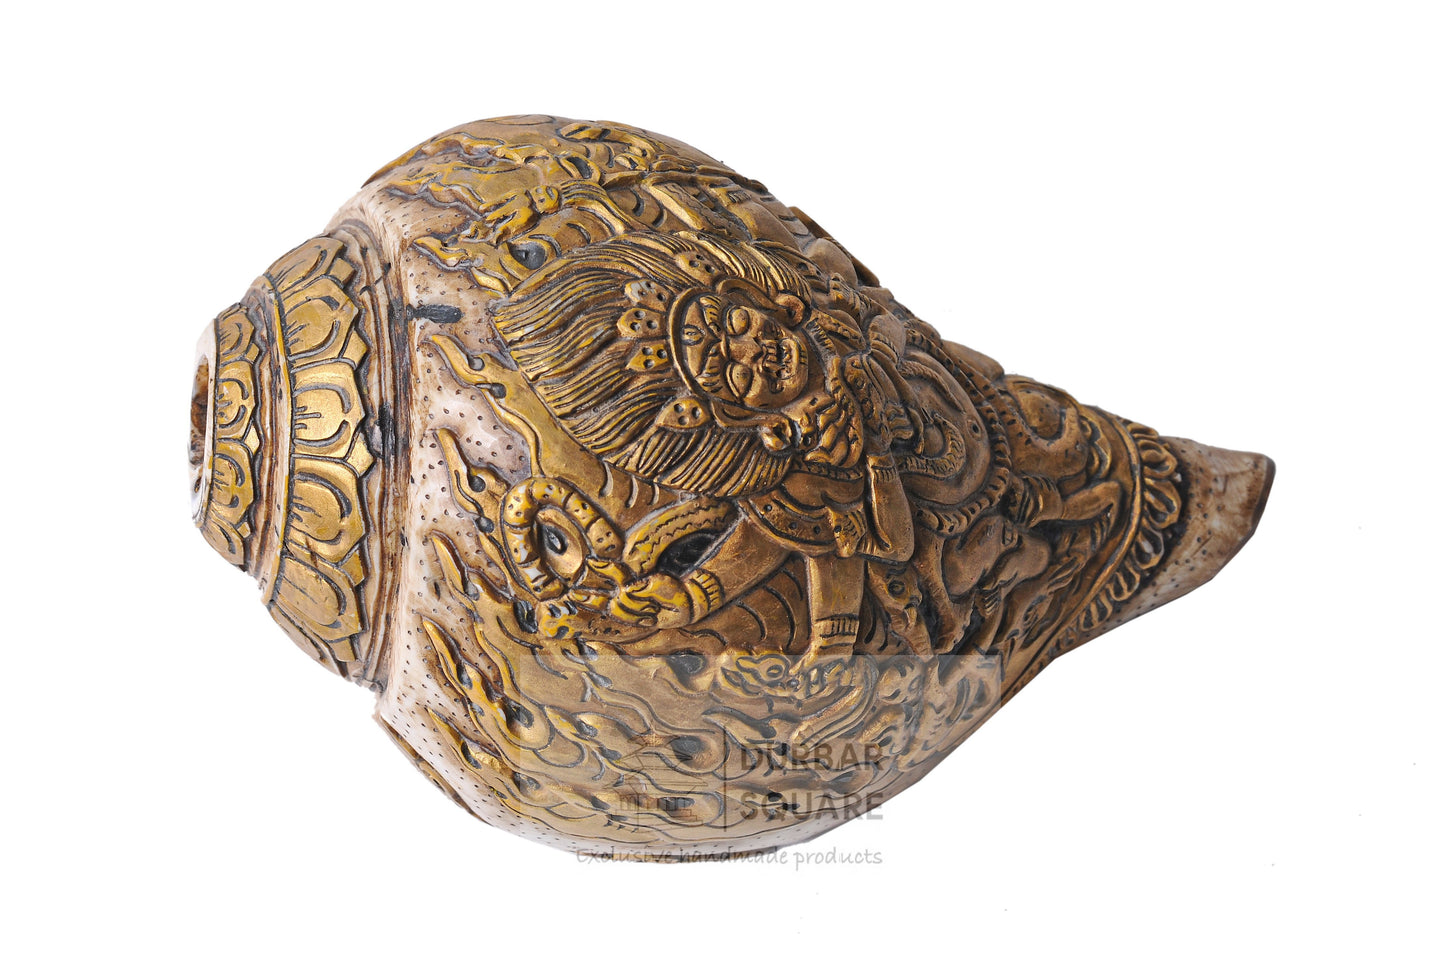 Bhairav engraved Conch shell